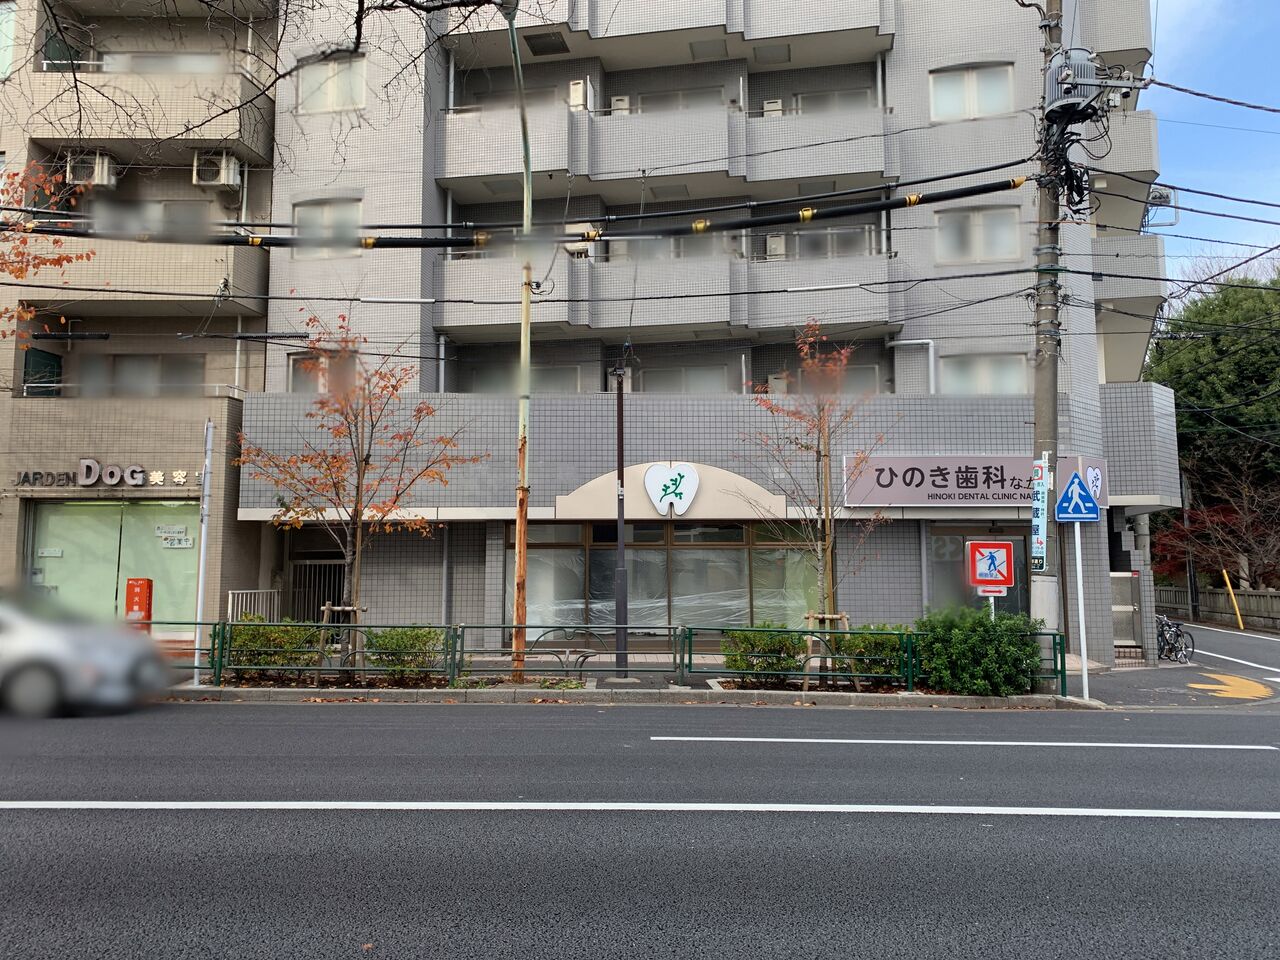 新井に『ひのき歯科なかの』なる歯医者さんが新規開院するらしい。 なかのく通信 東京都中野区の地域情報サイト